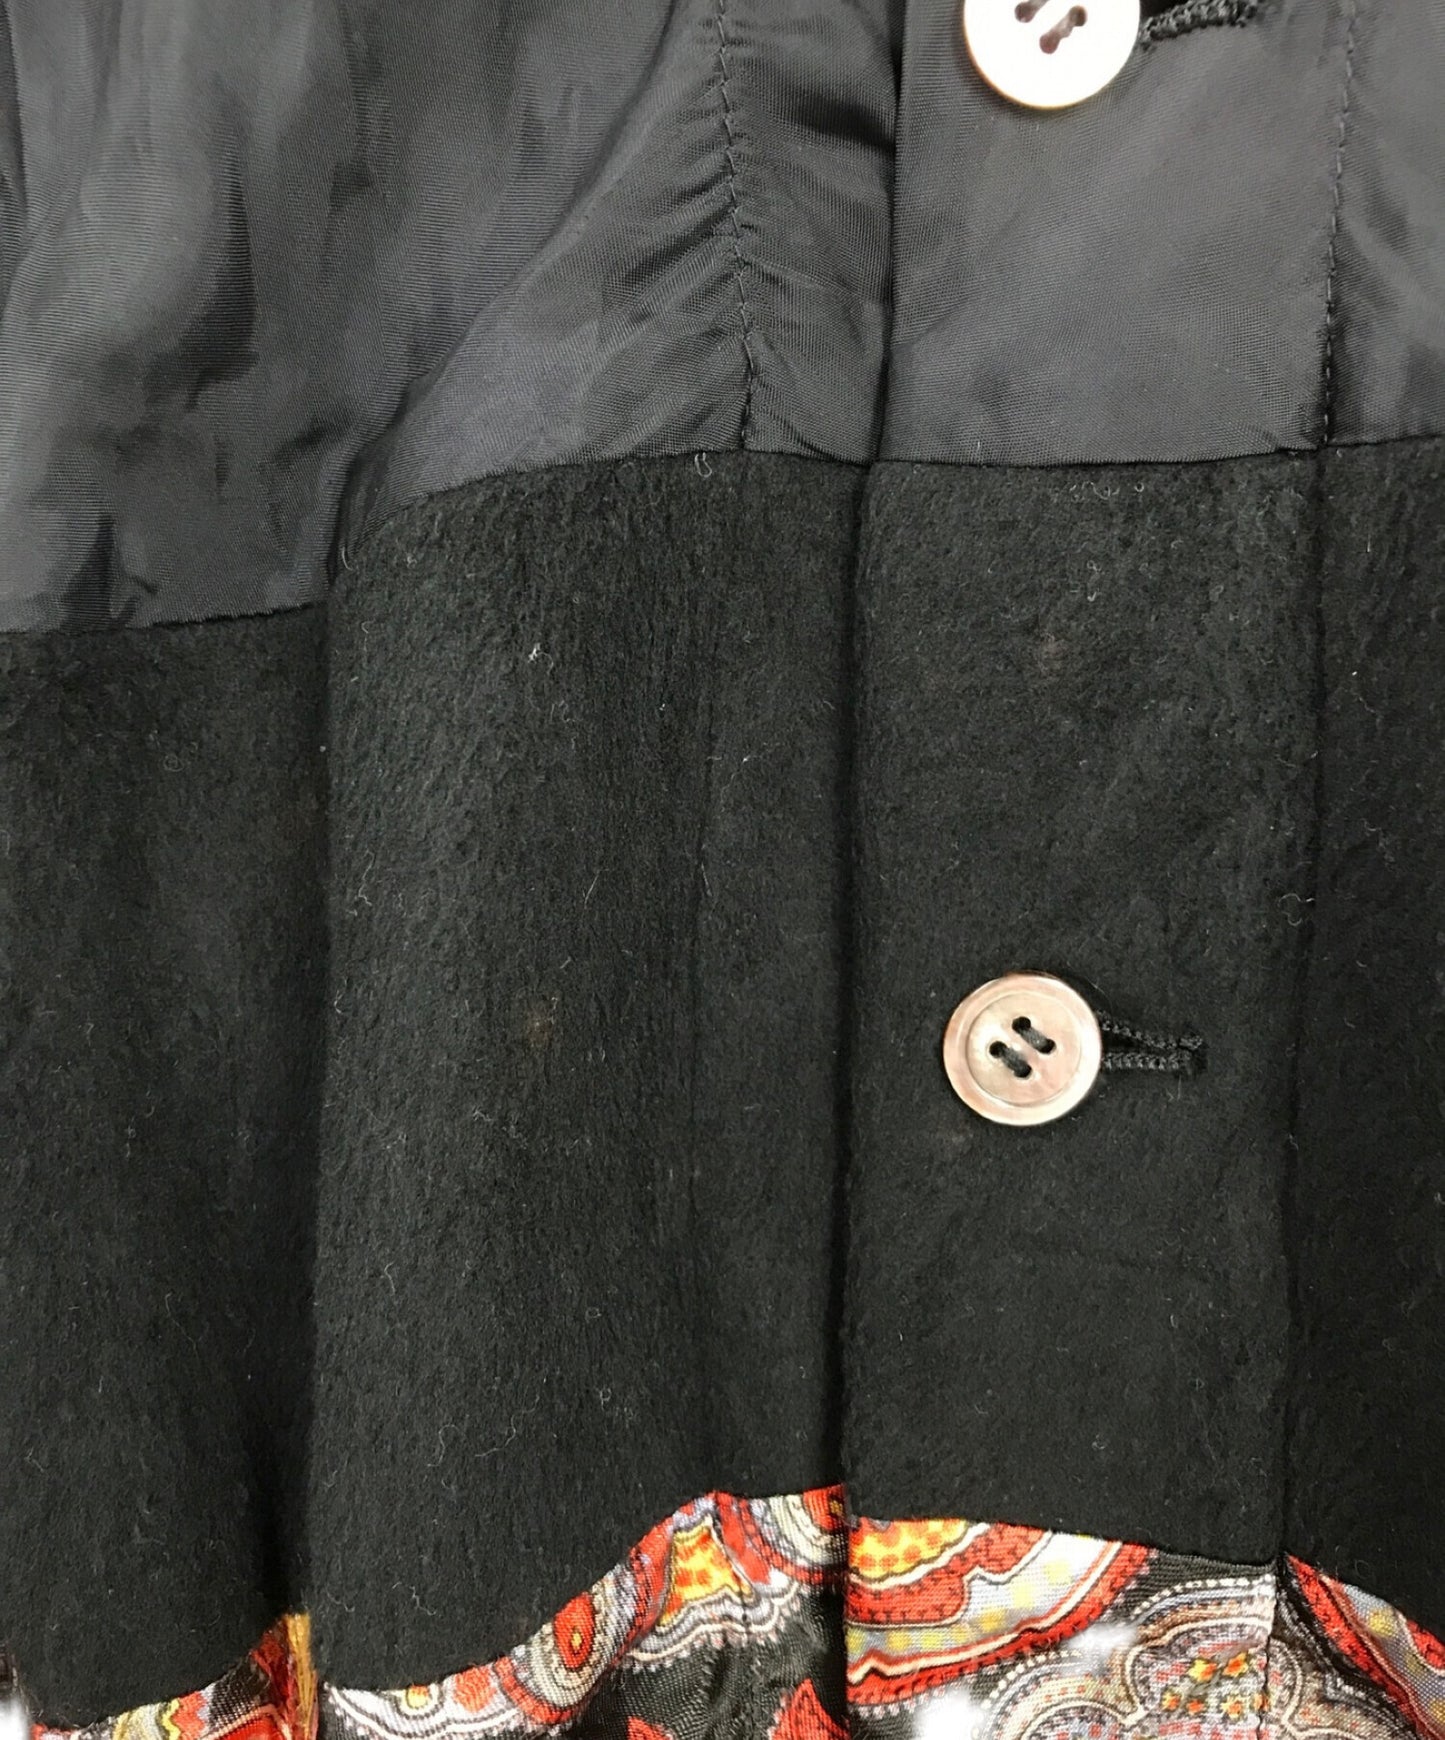 Comme des Garcons的前纽扣裙子带有不同的材料开关GS-040120